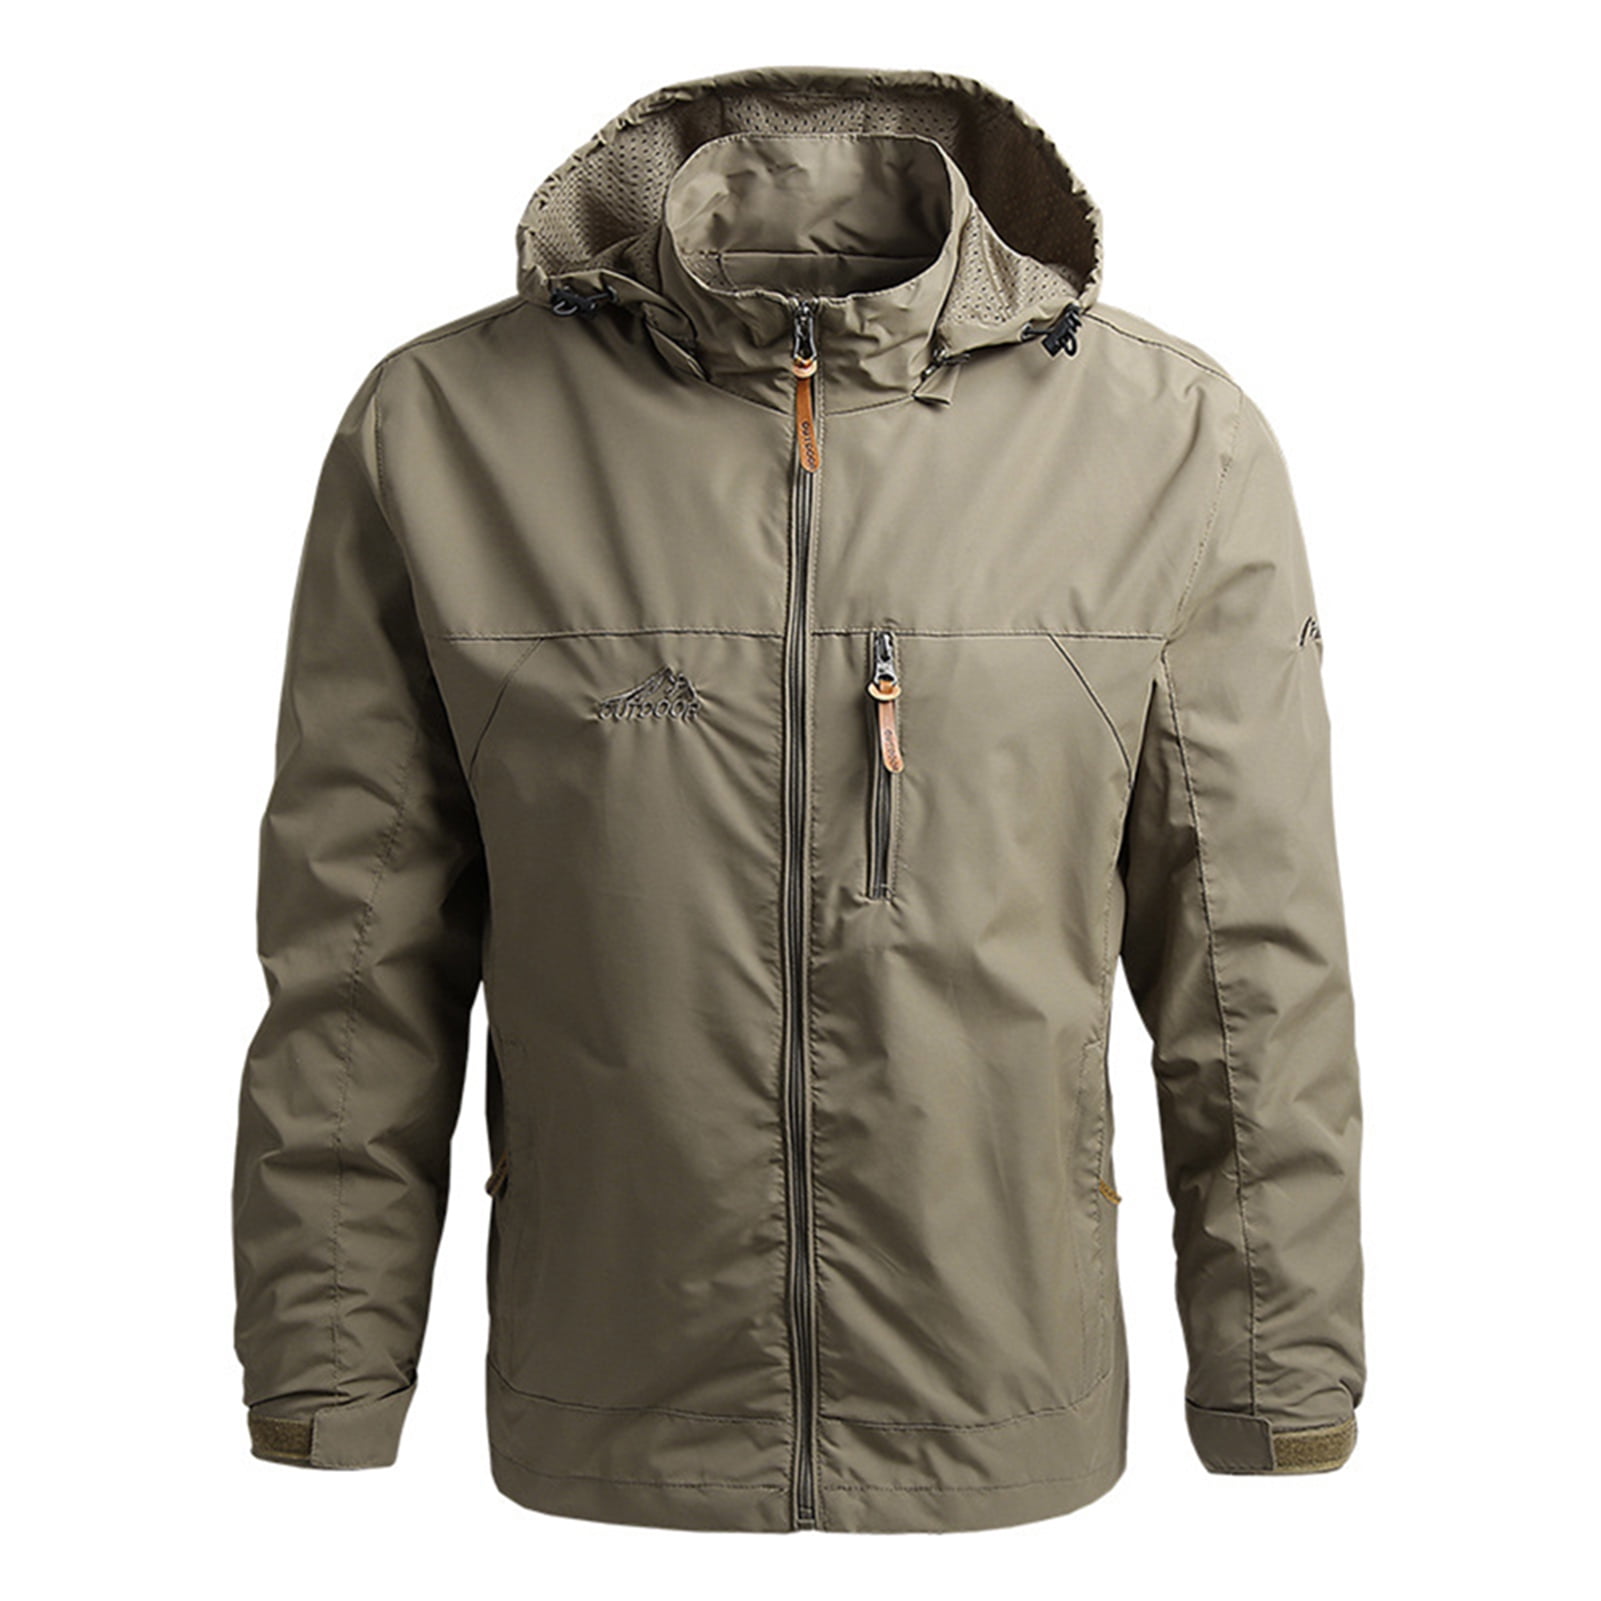 Liveday Jacket Hooded Coat Waterproof Warm Windbreaker for Men Fishing ...